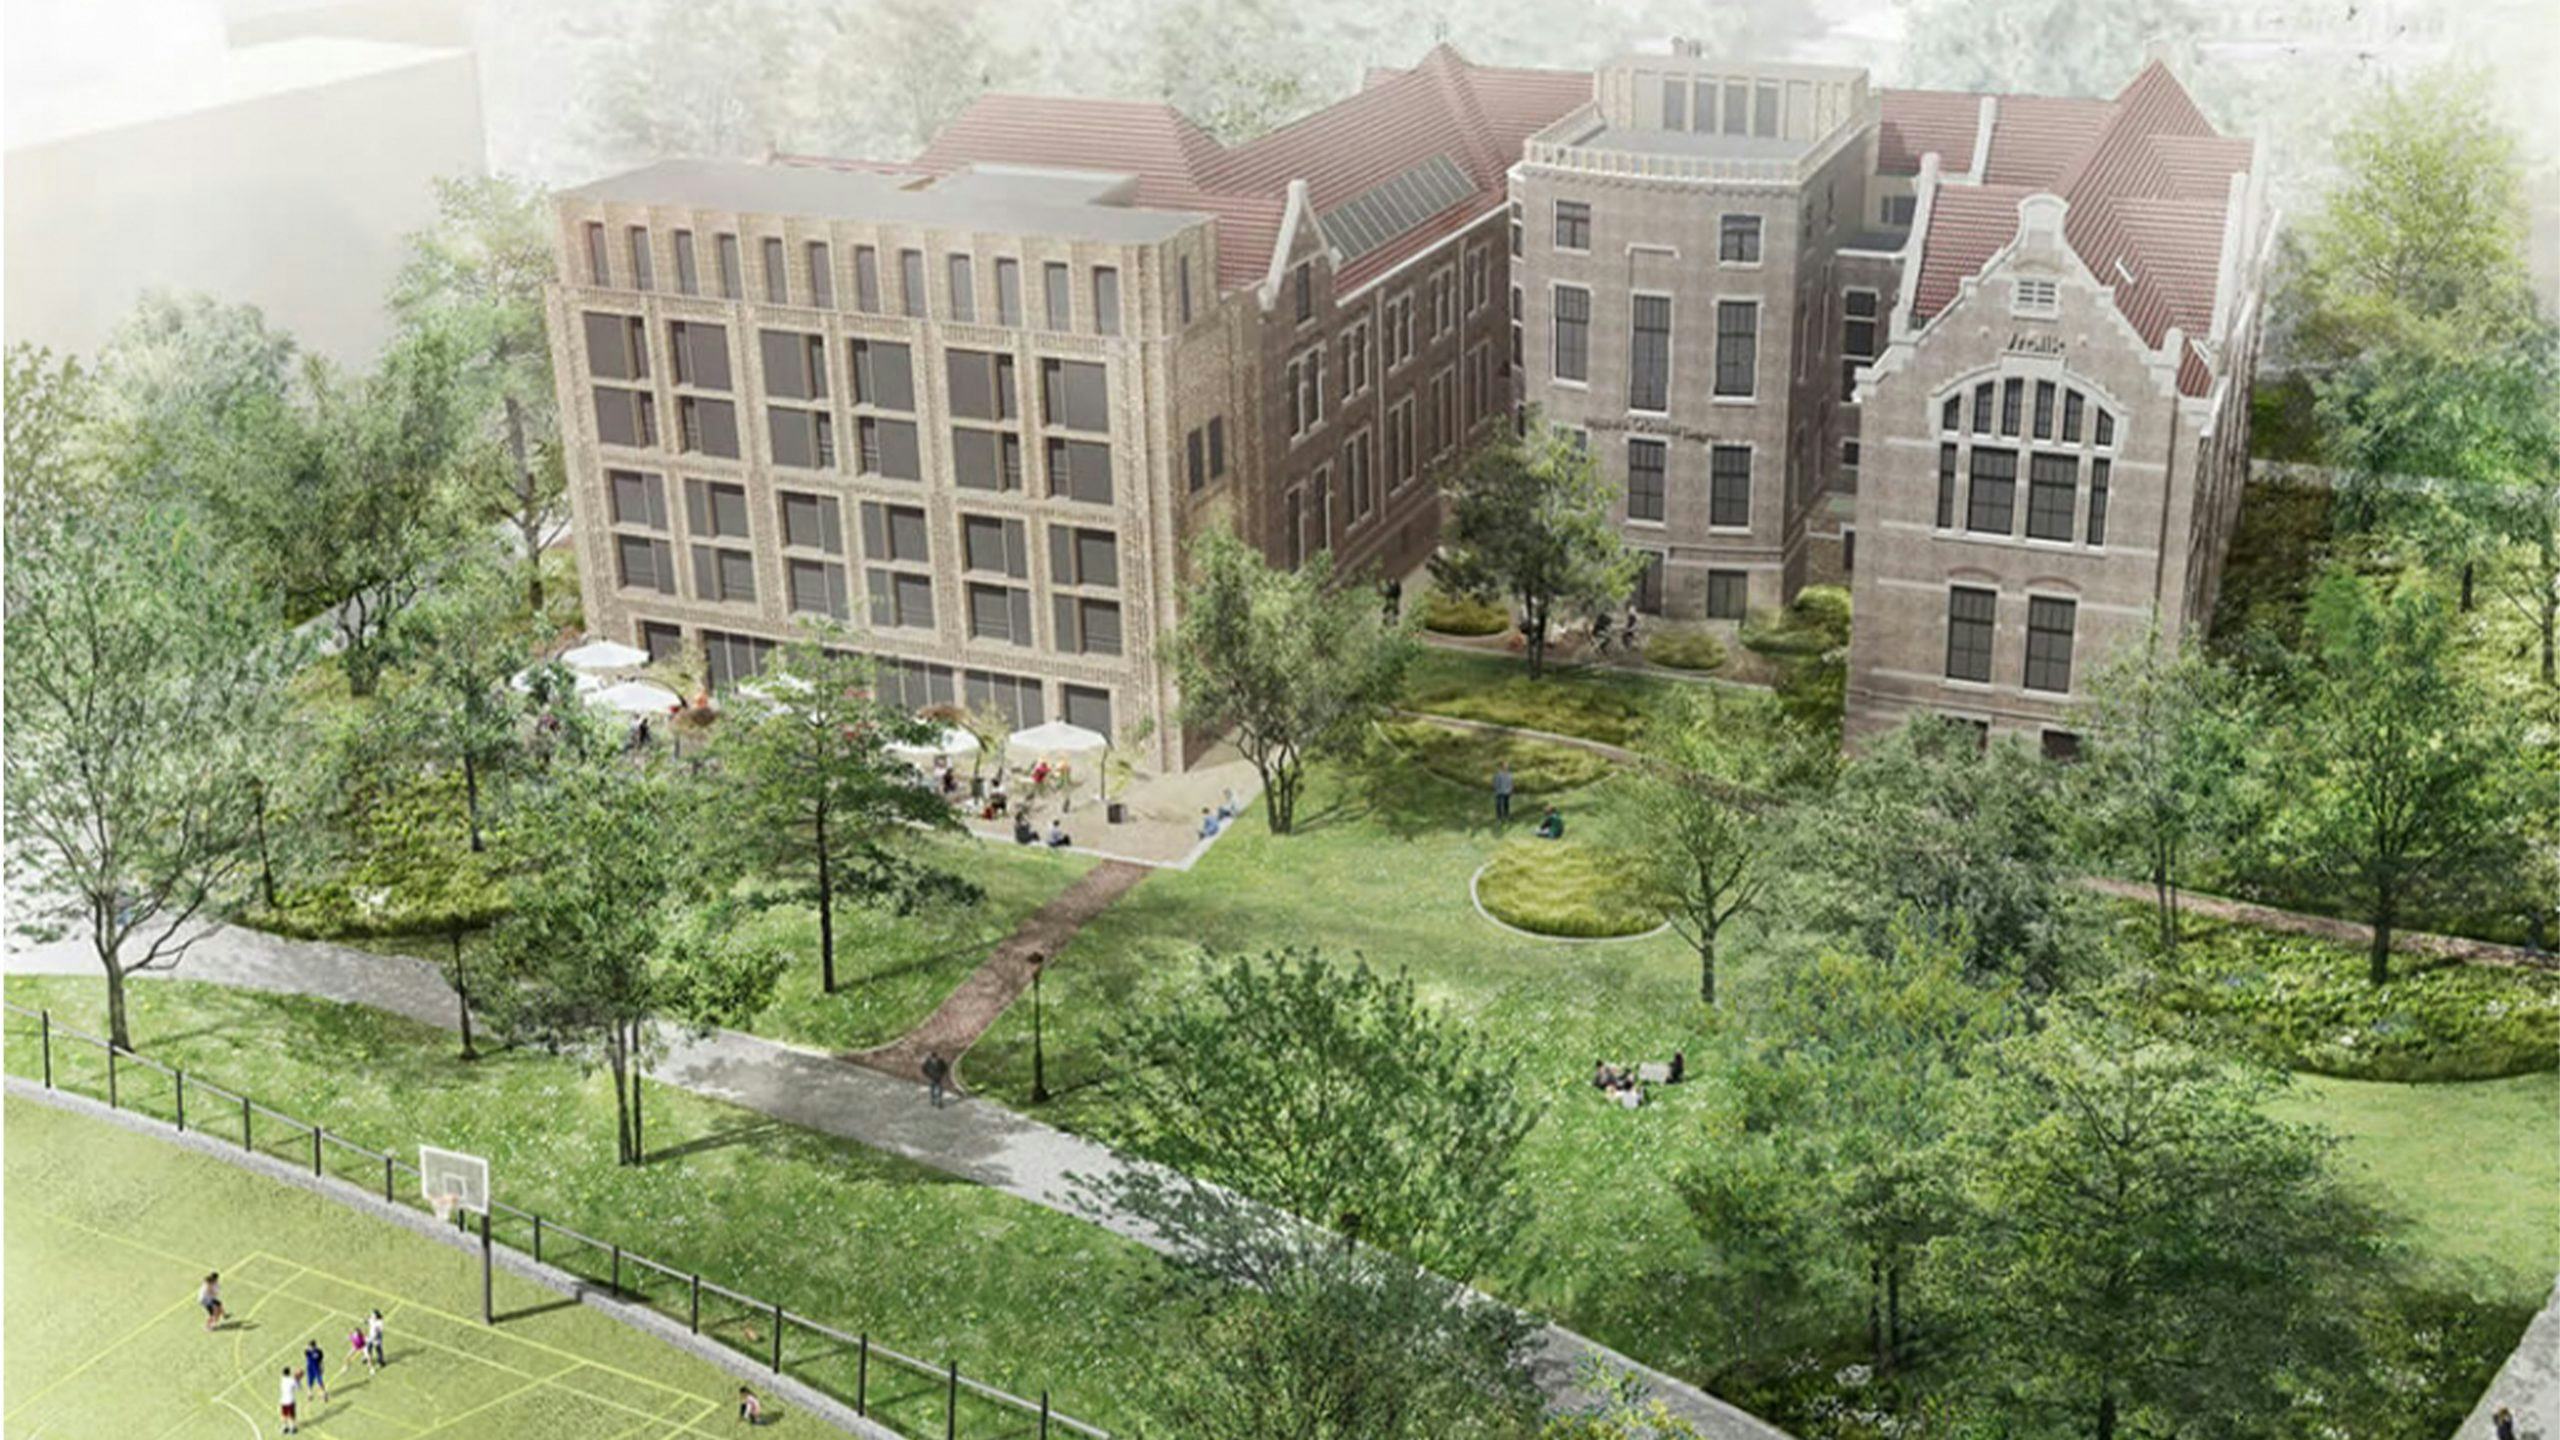 Pillows opent eind 2022 vijfsterrenhotel in Amsterdam